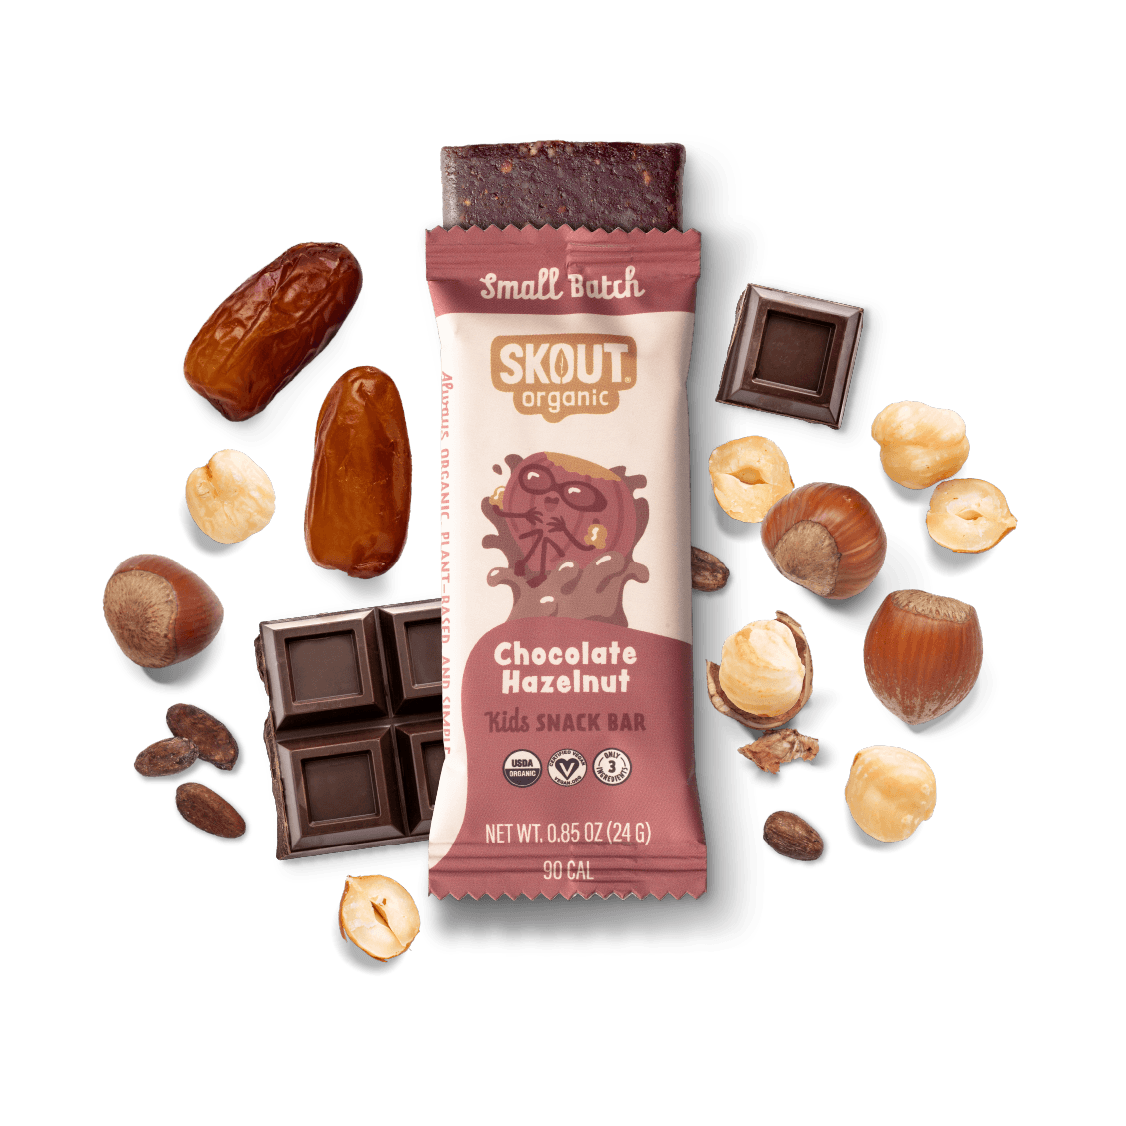 Chocolate Hazelnut Kids Bar Build Your Own Box - Single Bar Skout Organic Bar 